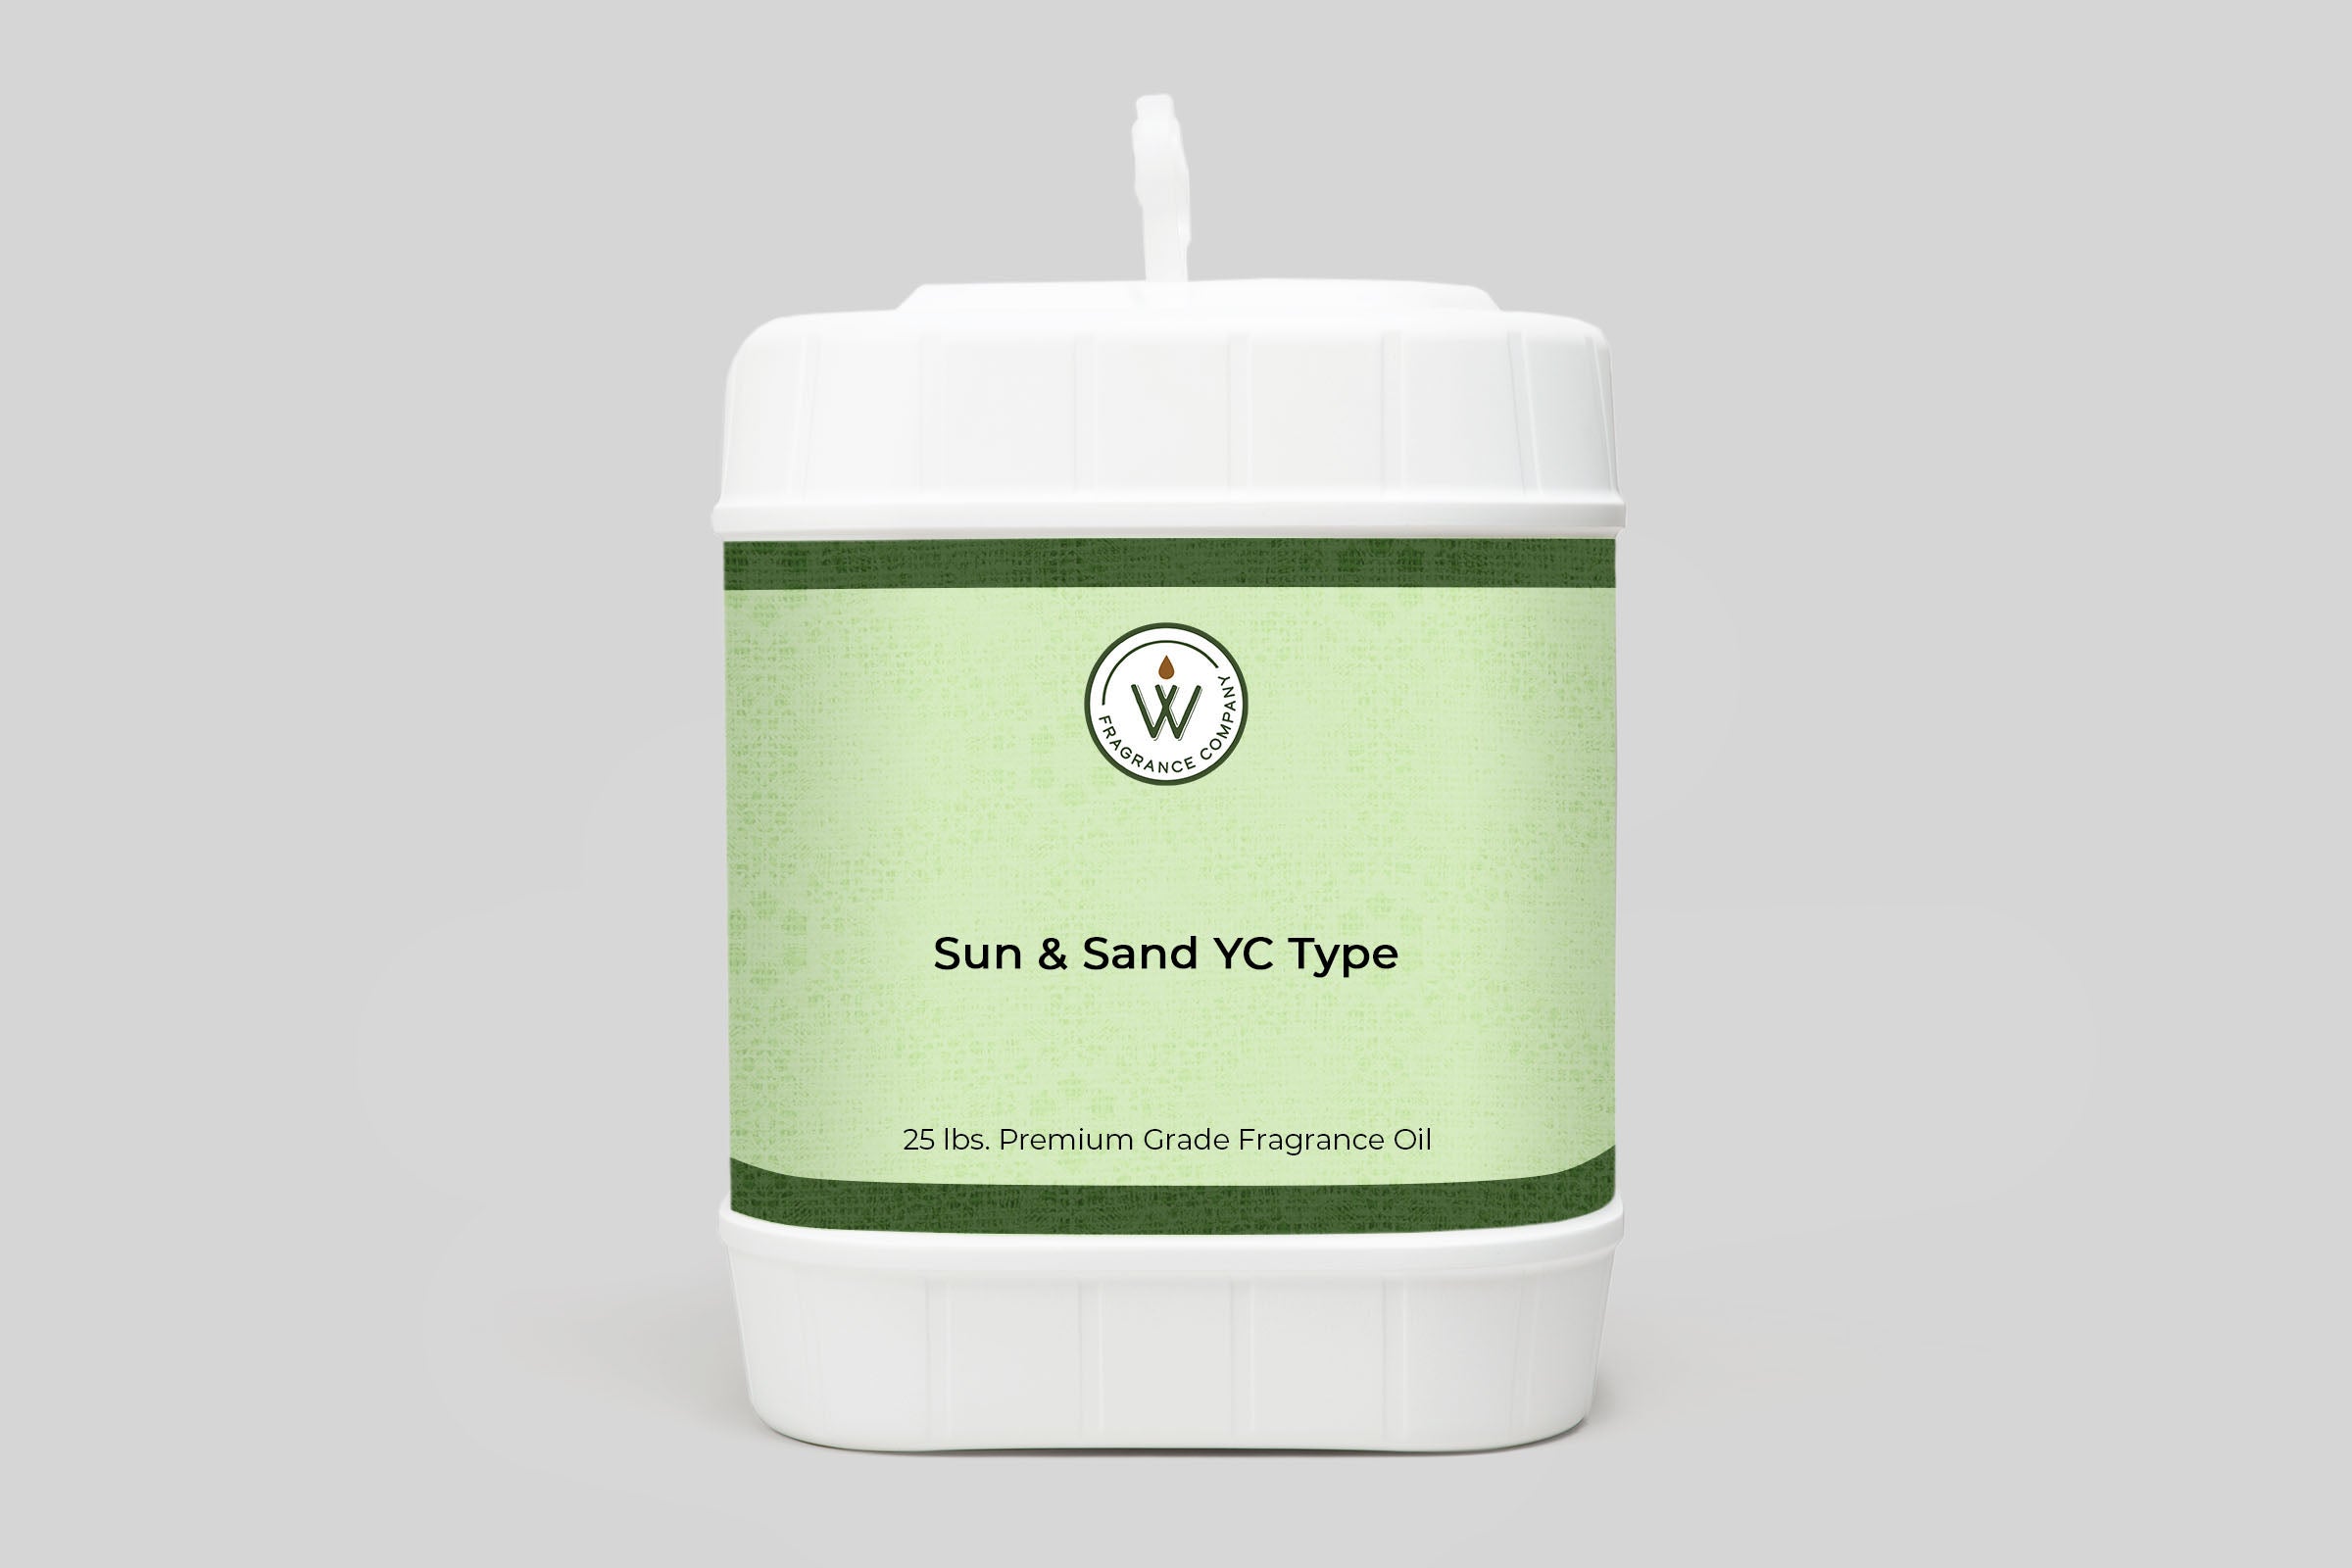 Sun & Sand YC Type Fragrance Oil